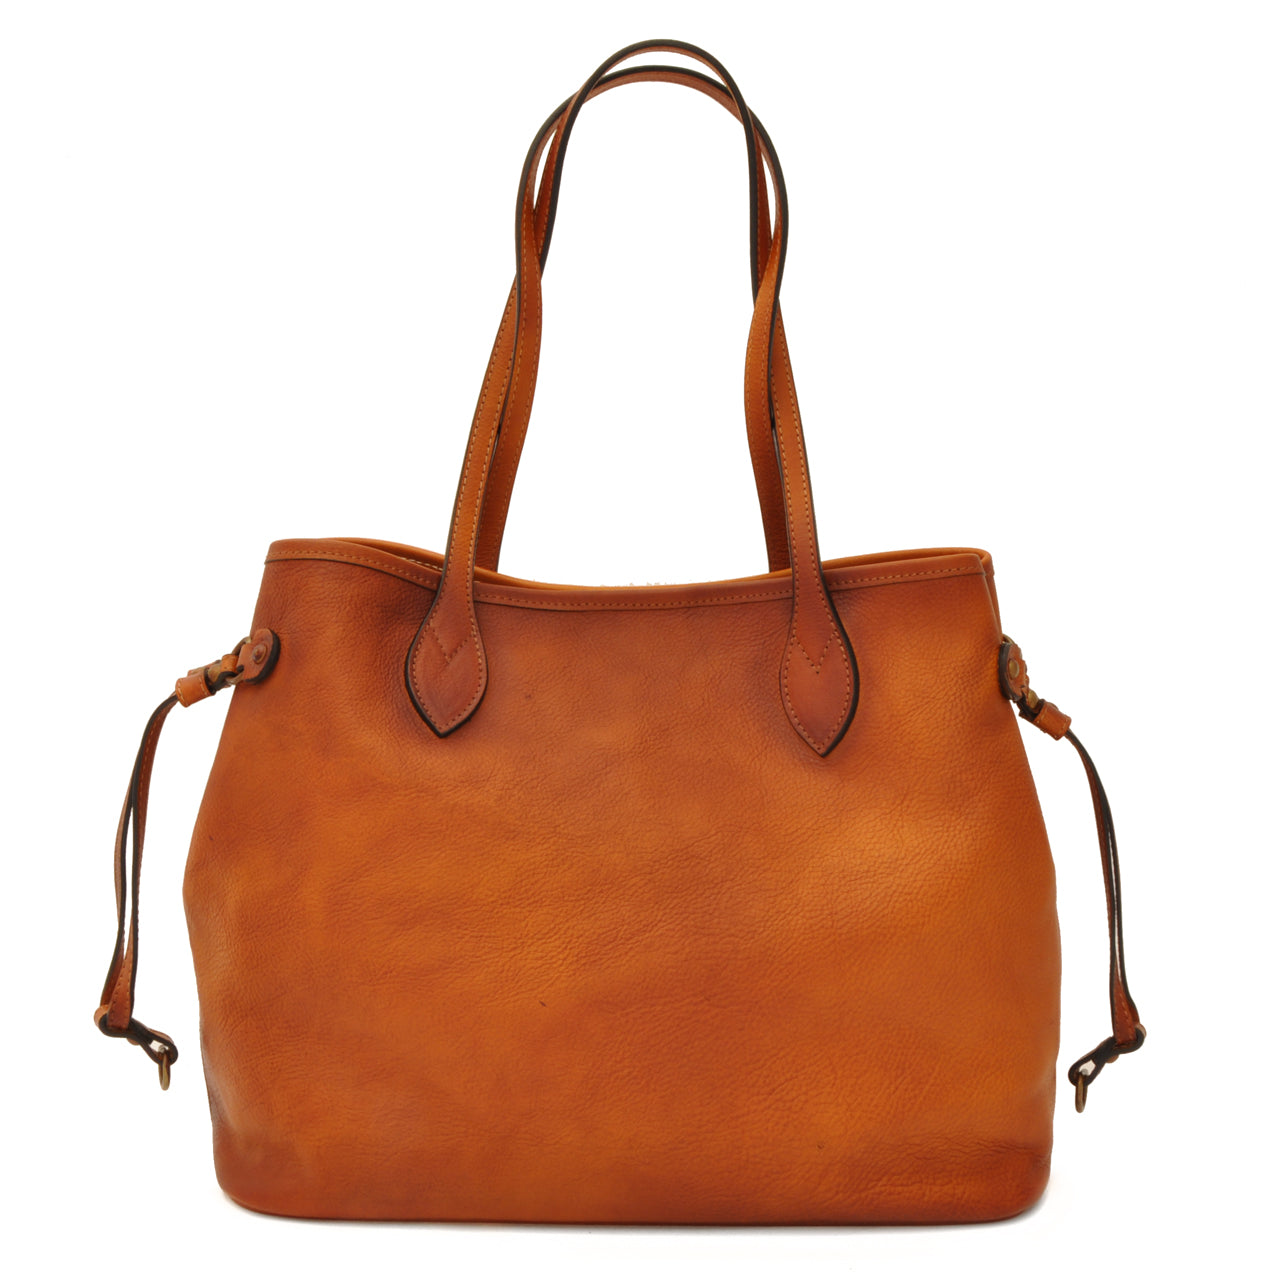 Pratesi Vetulonia Shoulder Bag in genuine Italian leather